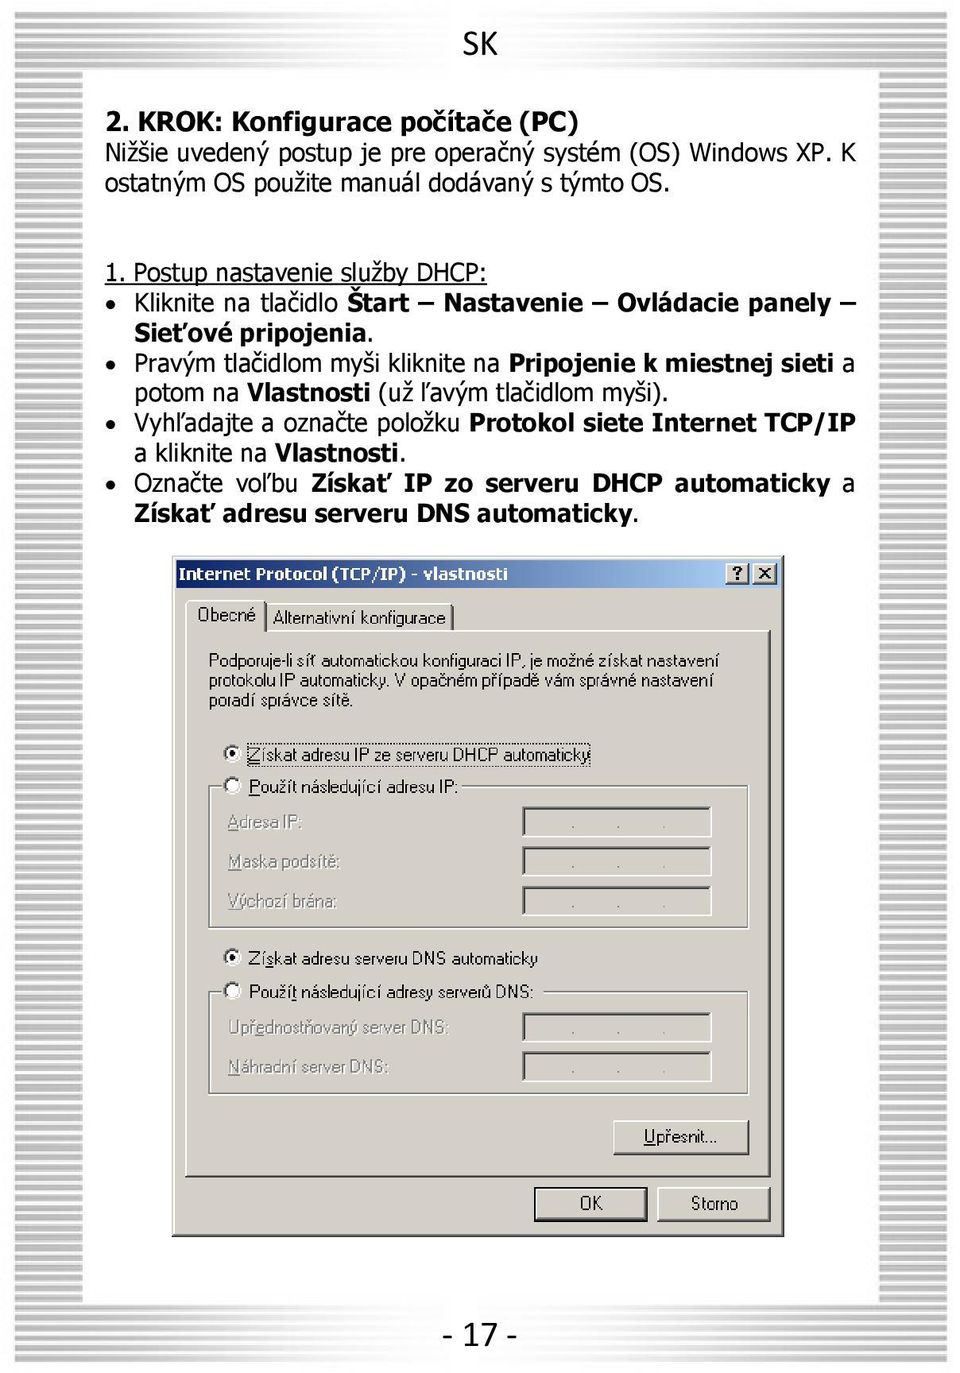 Postup nastavenie slu by DHCP: Kliknite na tlačidlo tart Nastavenie Ovládacie panely Sie ové pripojenia.